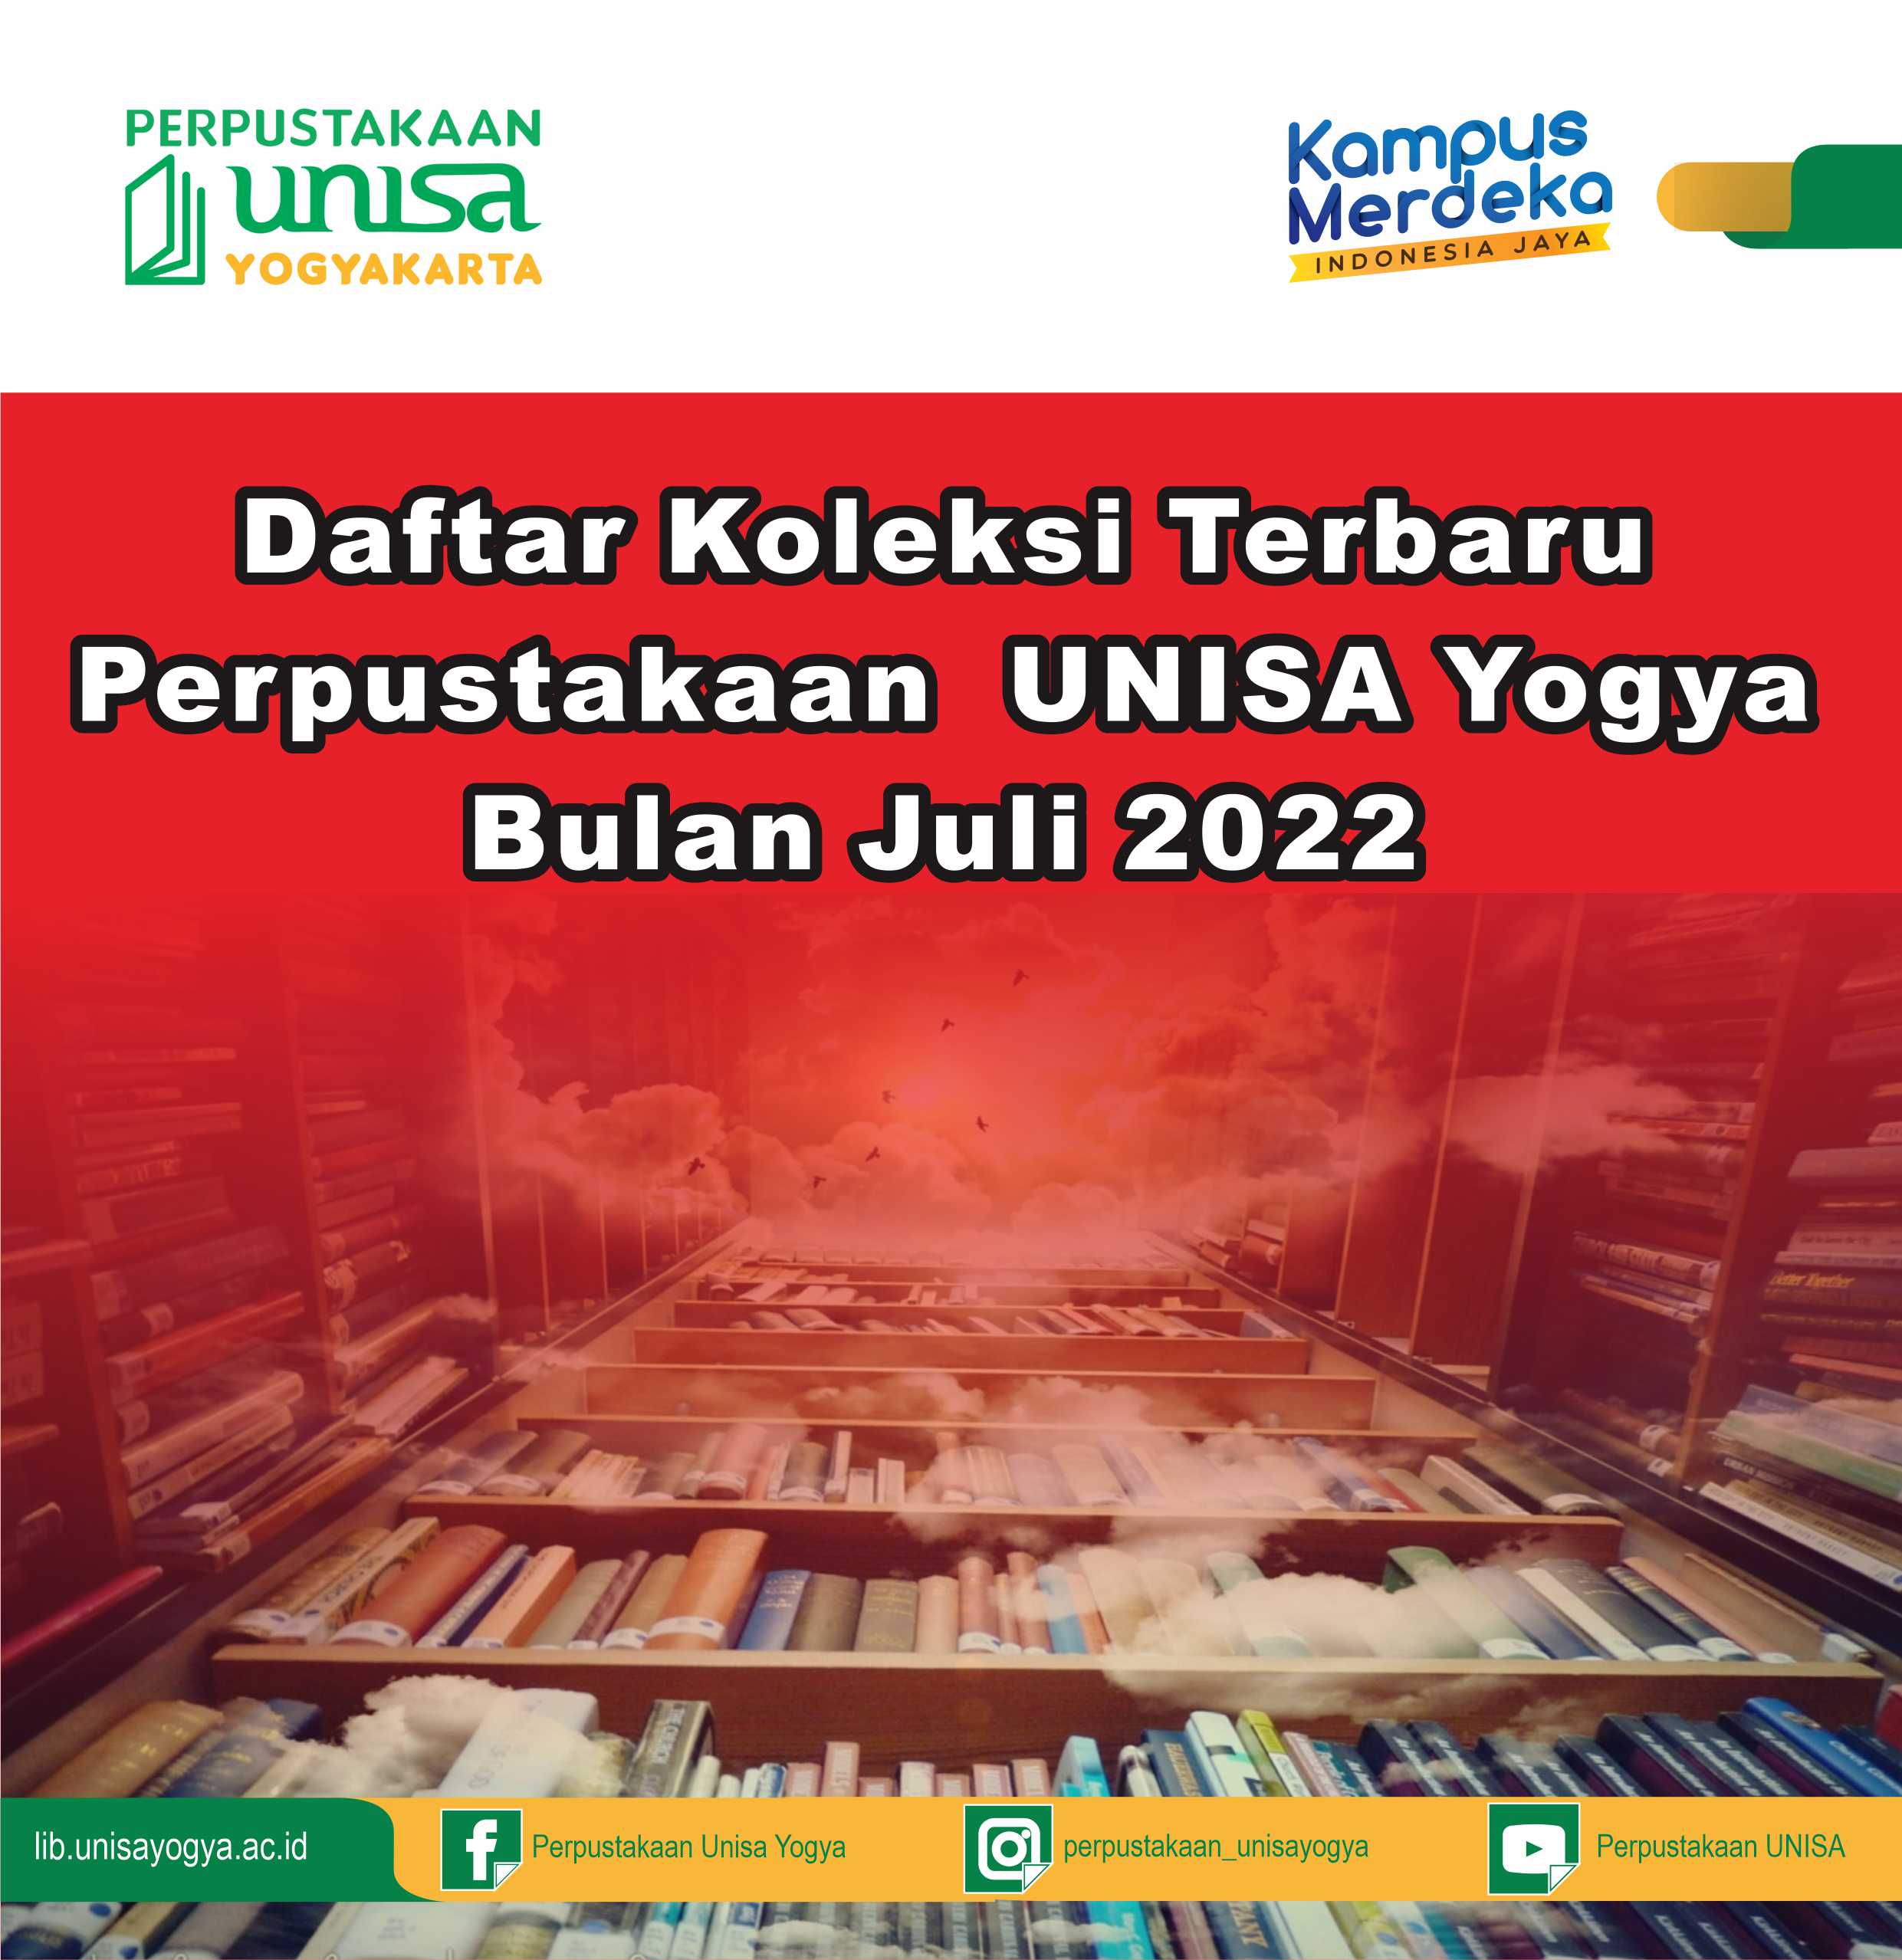 Daftar Koleksi Terbaru Perpustakaan UNISA Yogya Bulan Juli 2022